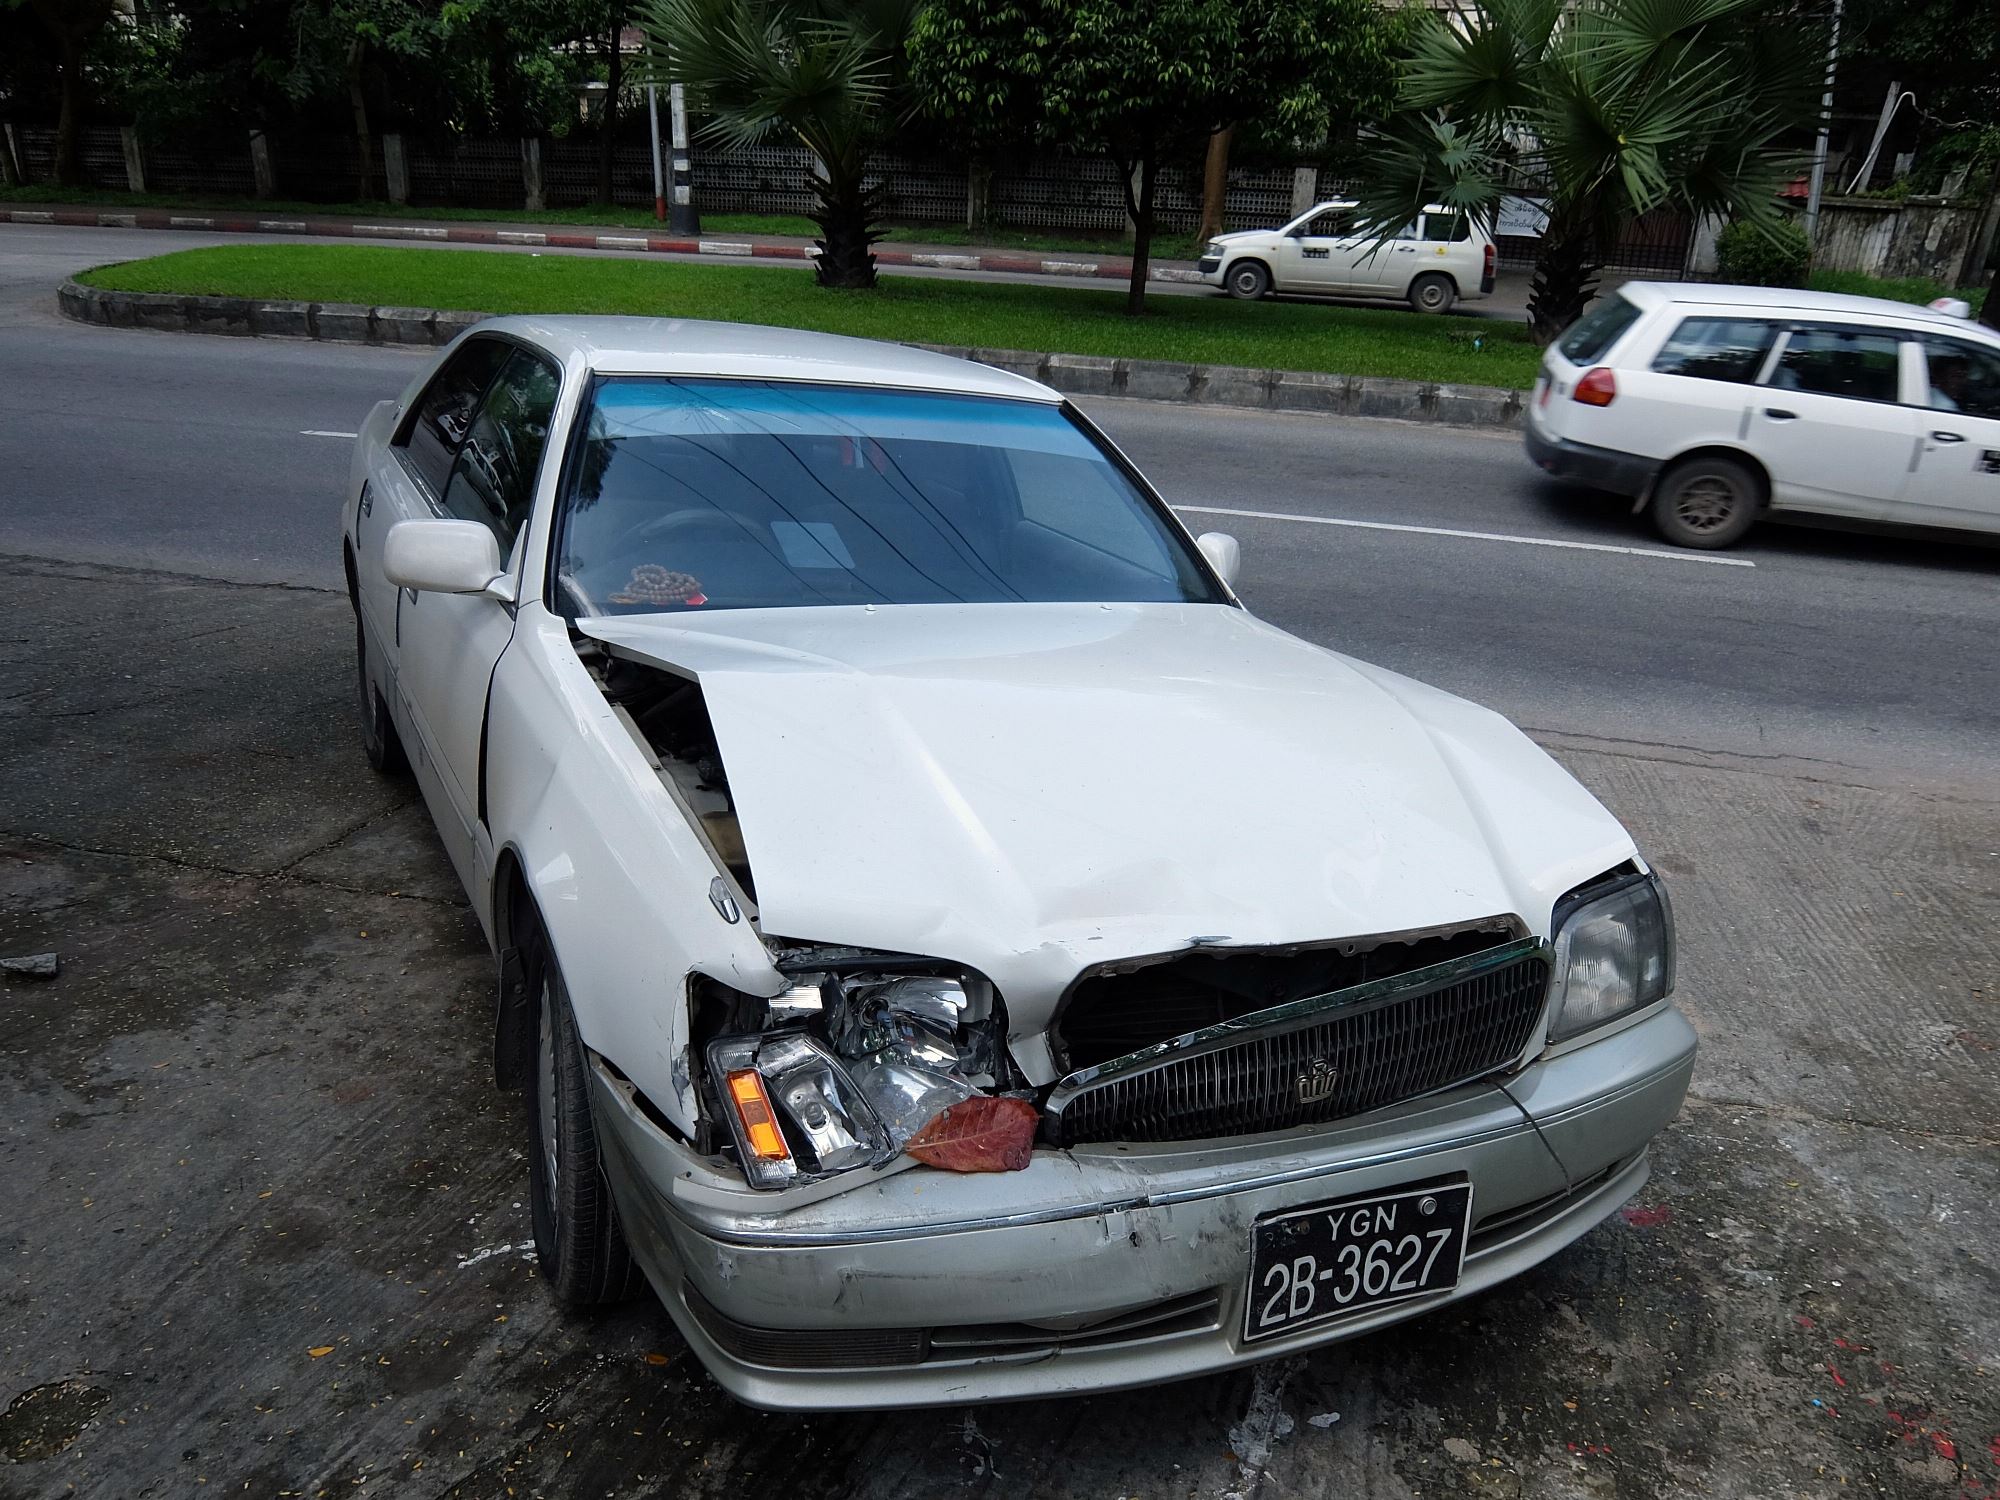 ヤンゴンでの一番のリスク、それは交通事故かも